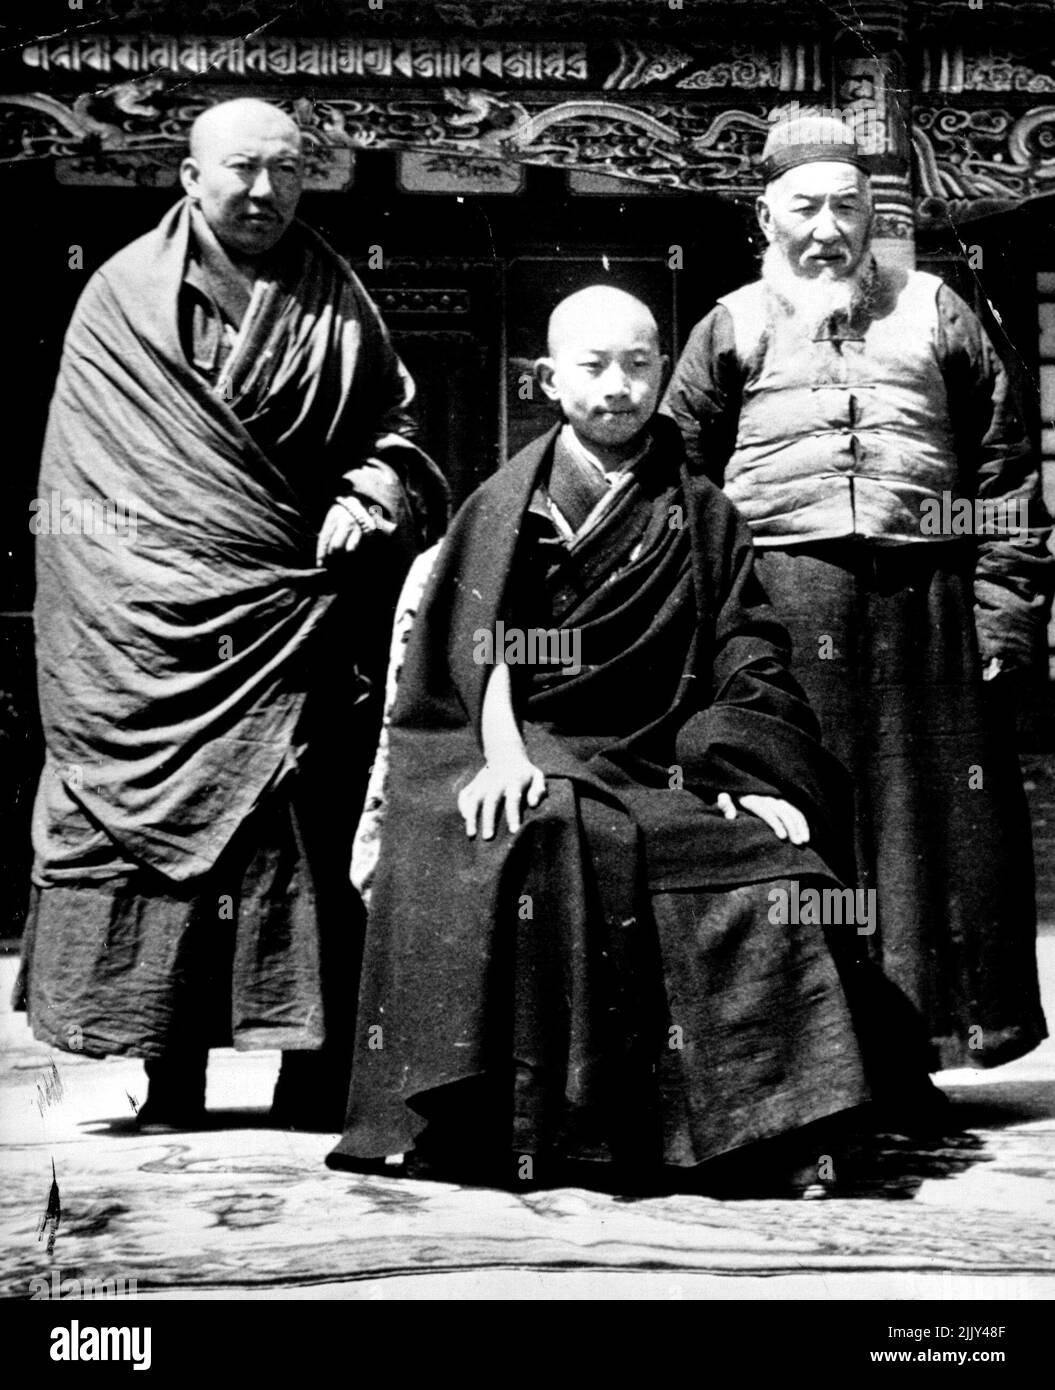 Garçon Tibetian Ruler avec des conseillers - Panchan Lama (centre), âgé de onze ans, dirigeant spirituel de 9 000 000 bouddhistes Tibetiens, est flanqué par ses conseillers est Lo sang Yan-Zen, 73, le régent. Un autre conseiller n'est pas identifié. 23 avril 1948. (Photo par AP Wirephoto). Banque D'Images